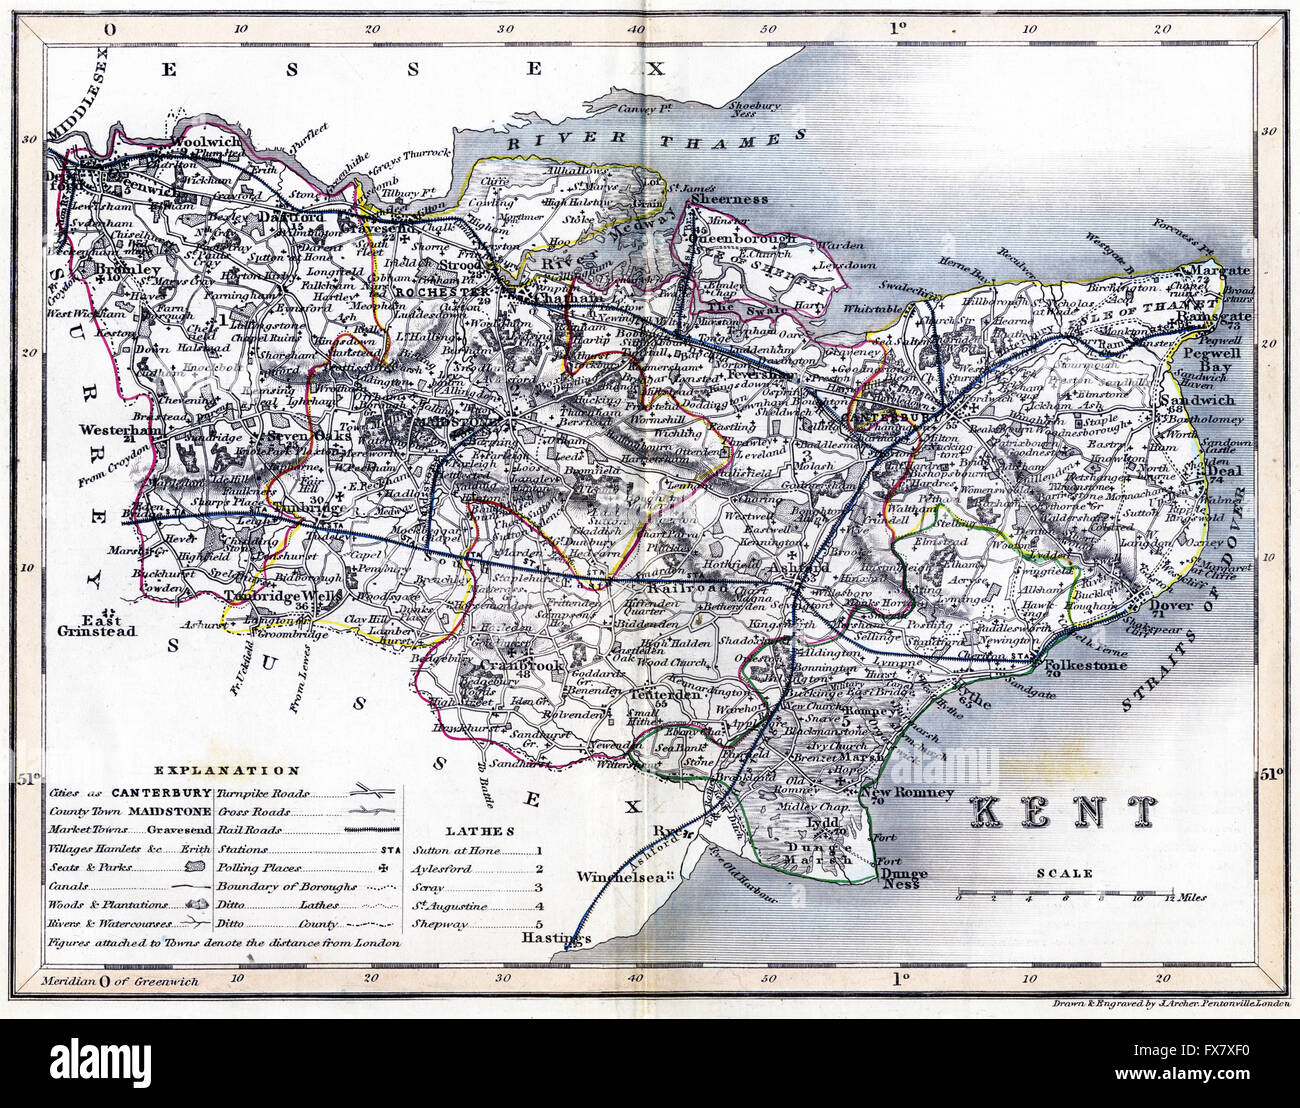 Eine alte farbige Karte der Grafschaft Kent UK, die in hoher Auflösung aus einem um 1845 gedruckten Buch gescannt wurde. Für urheberrechtlich frei gehalten. Stockfoto